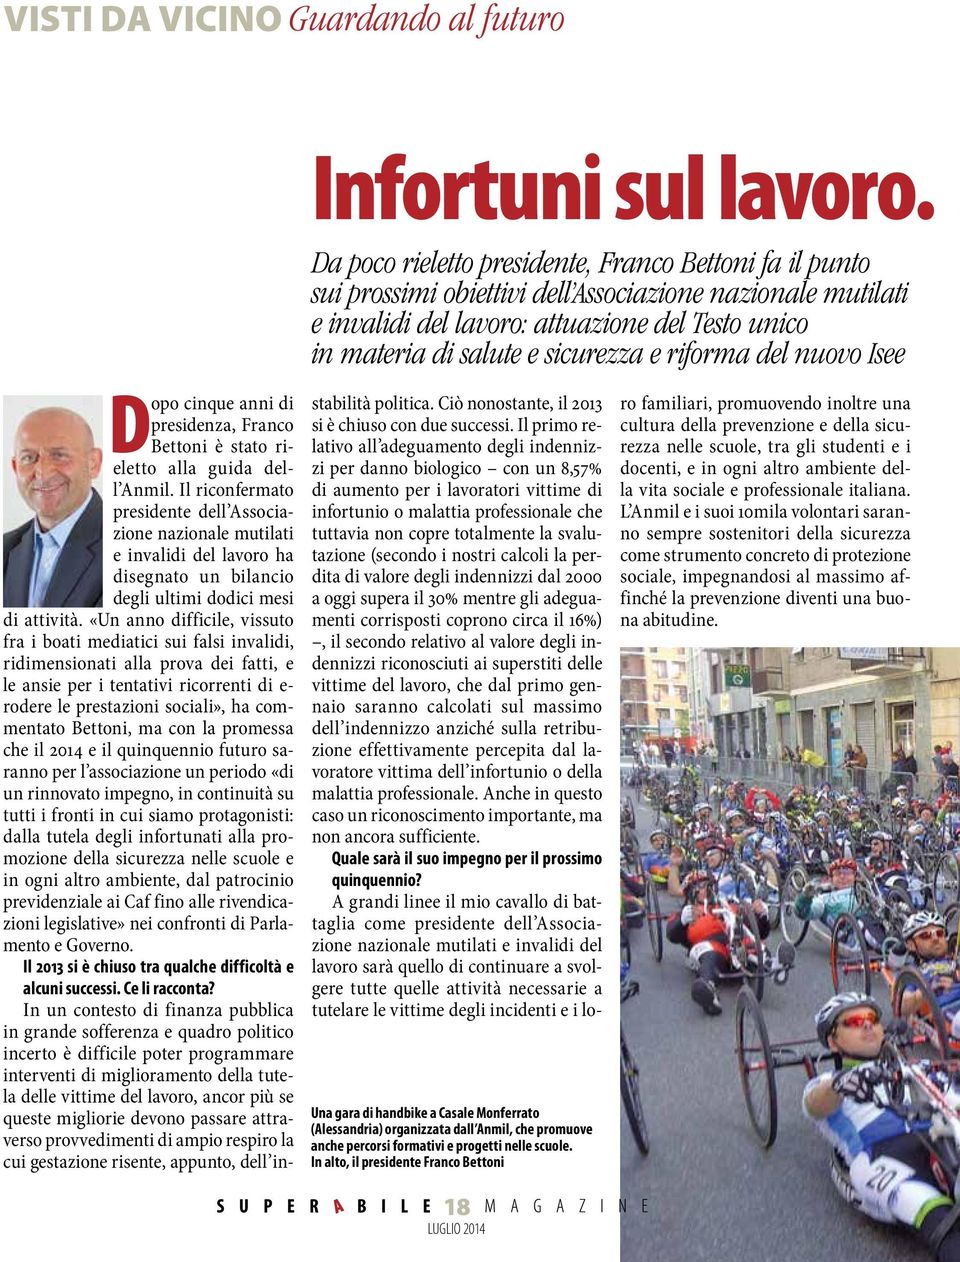 e riforma del nuovo Isee Una gara di handbike a Casale Monferrato (Alessandria) organizzata dall Anmil, che promuove anche percorsi formativi e progetti nelle scuole.